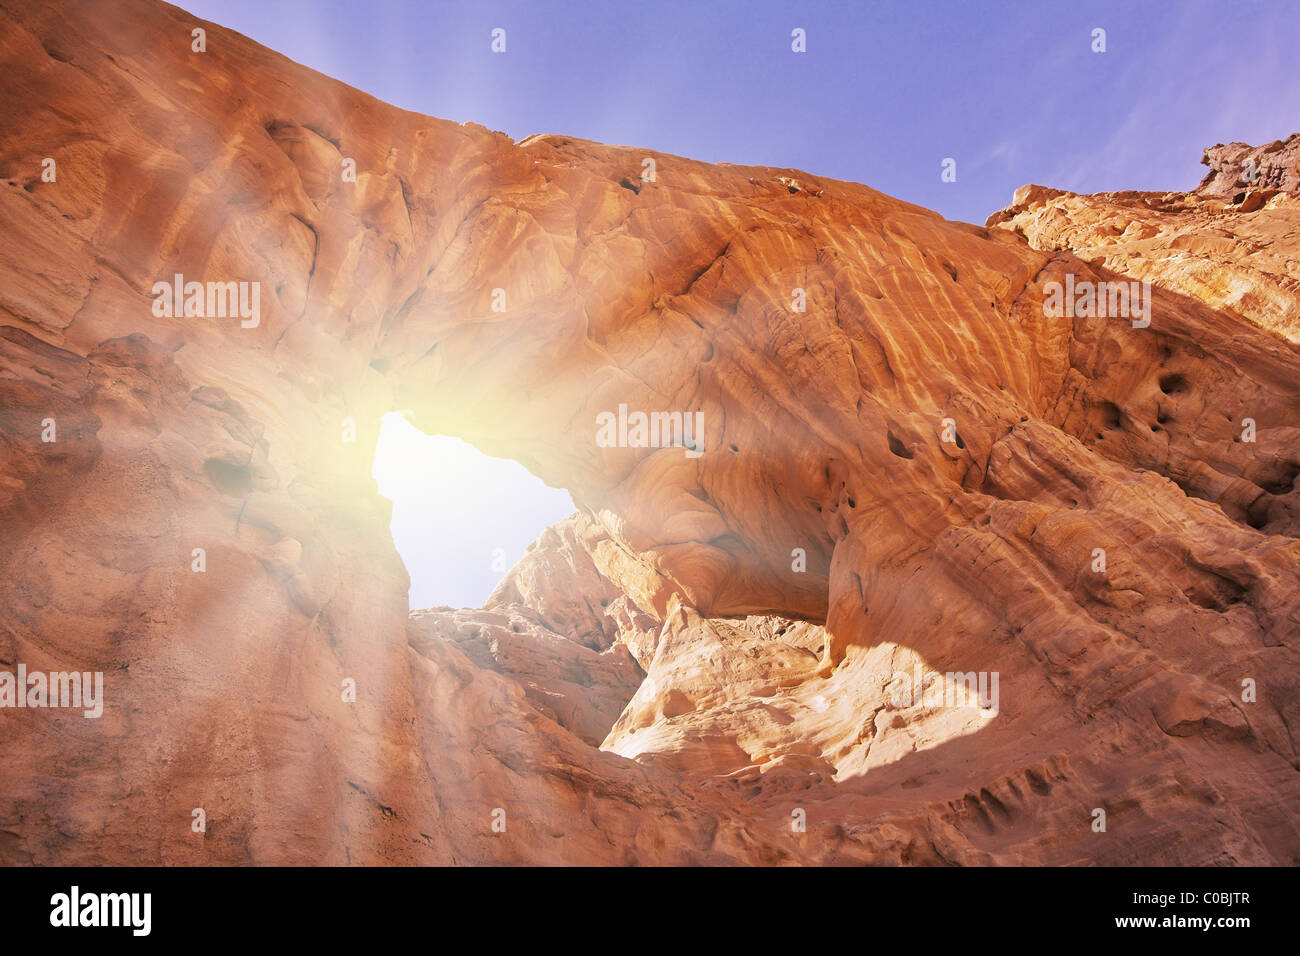 Arco erosivas naturales en los cerros de arenisca roja en el desierto Foto de stock